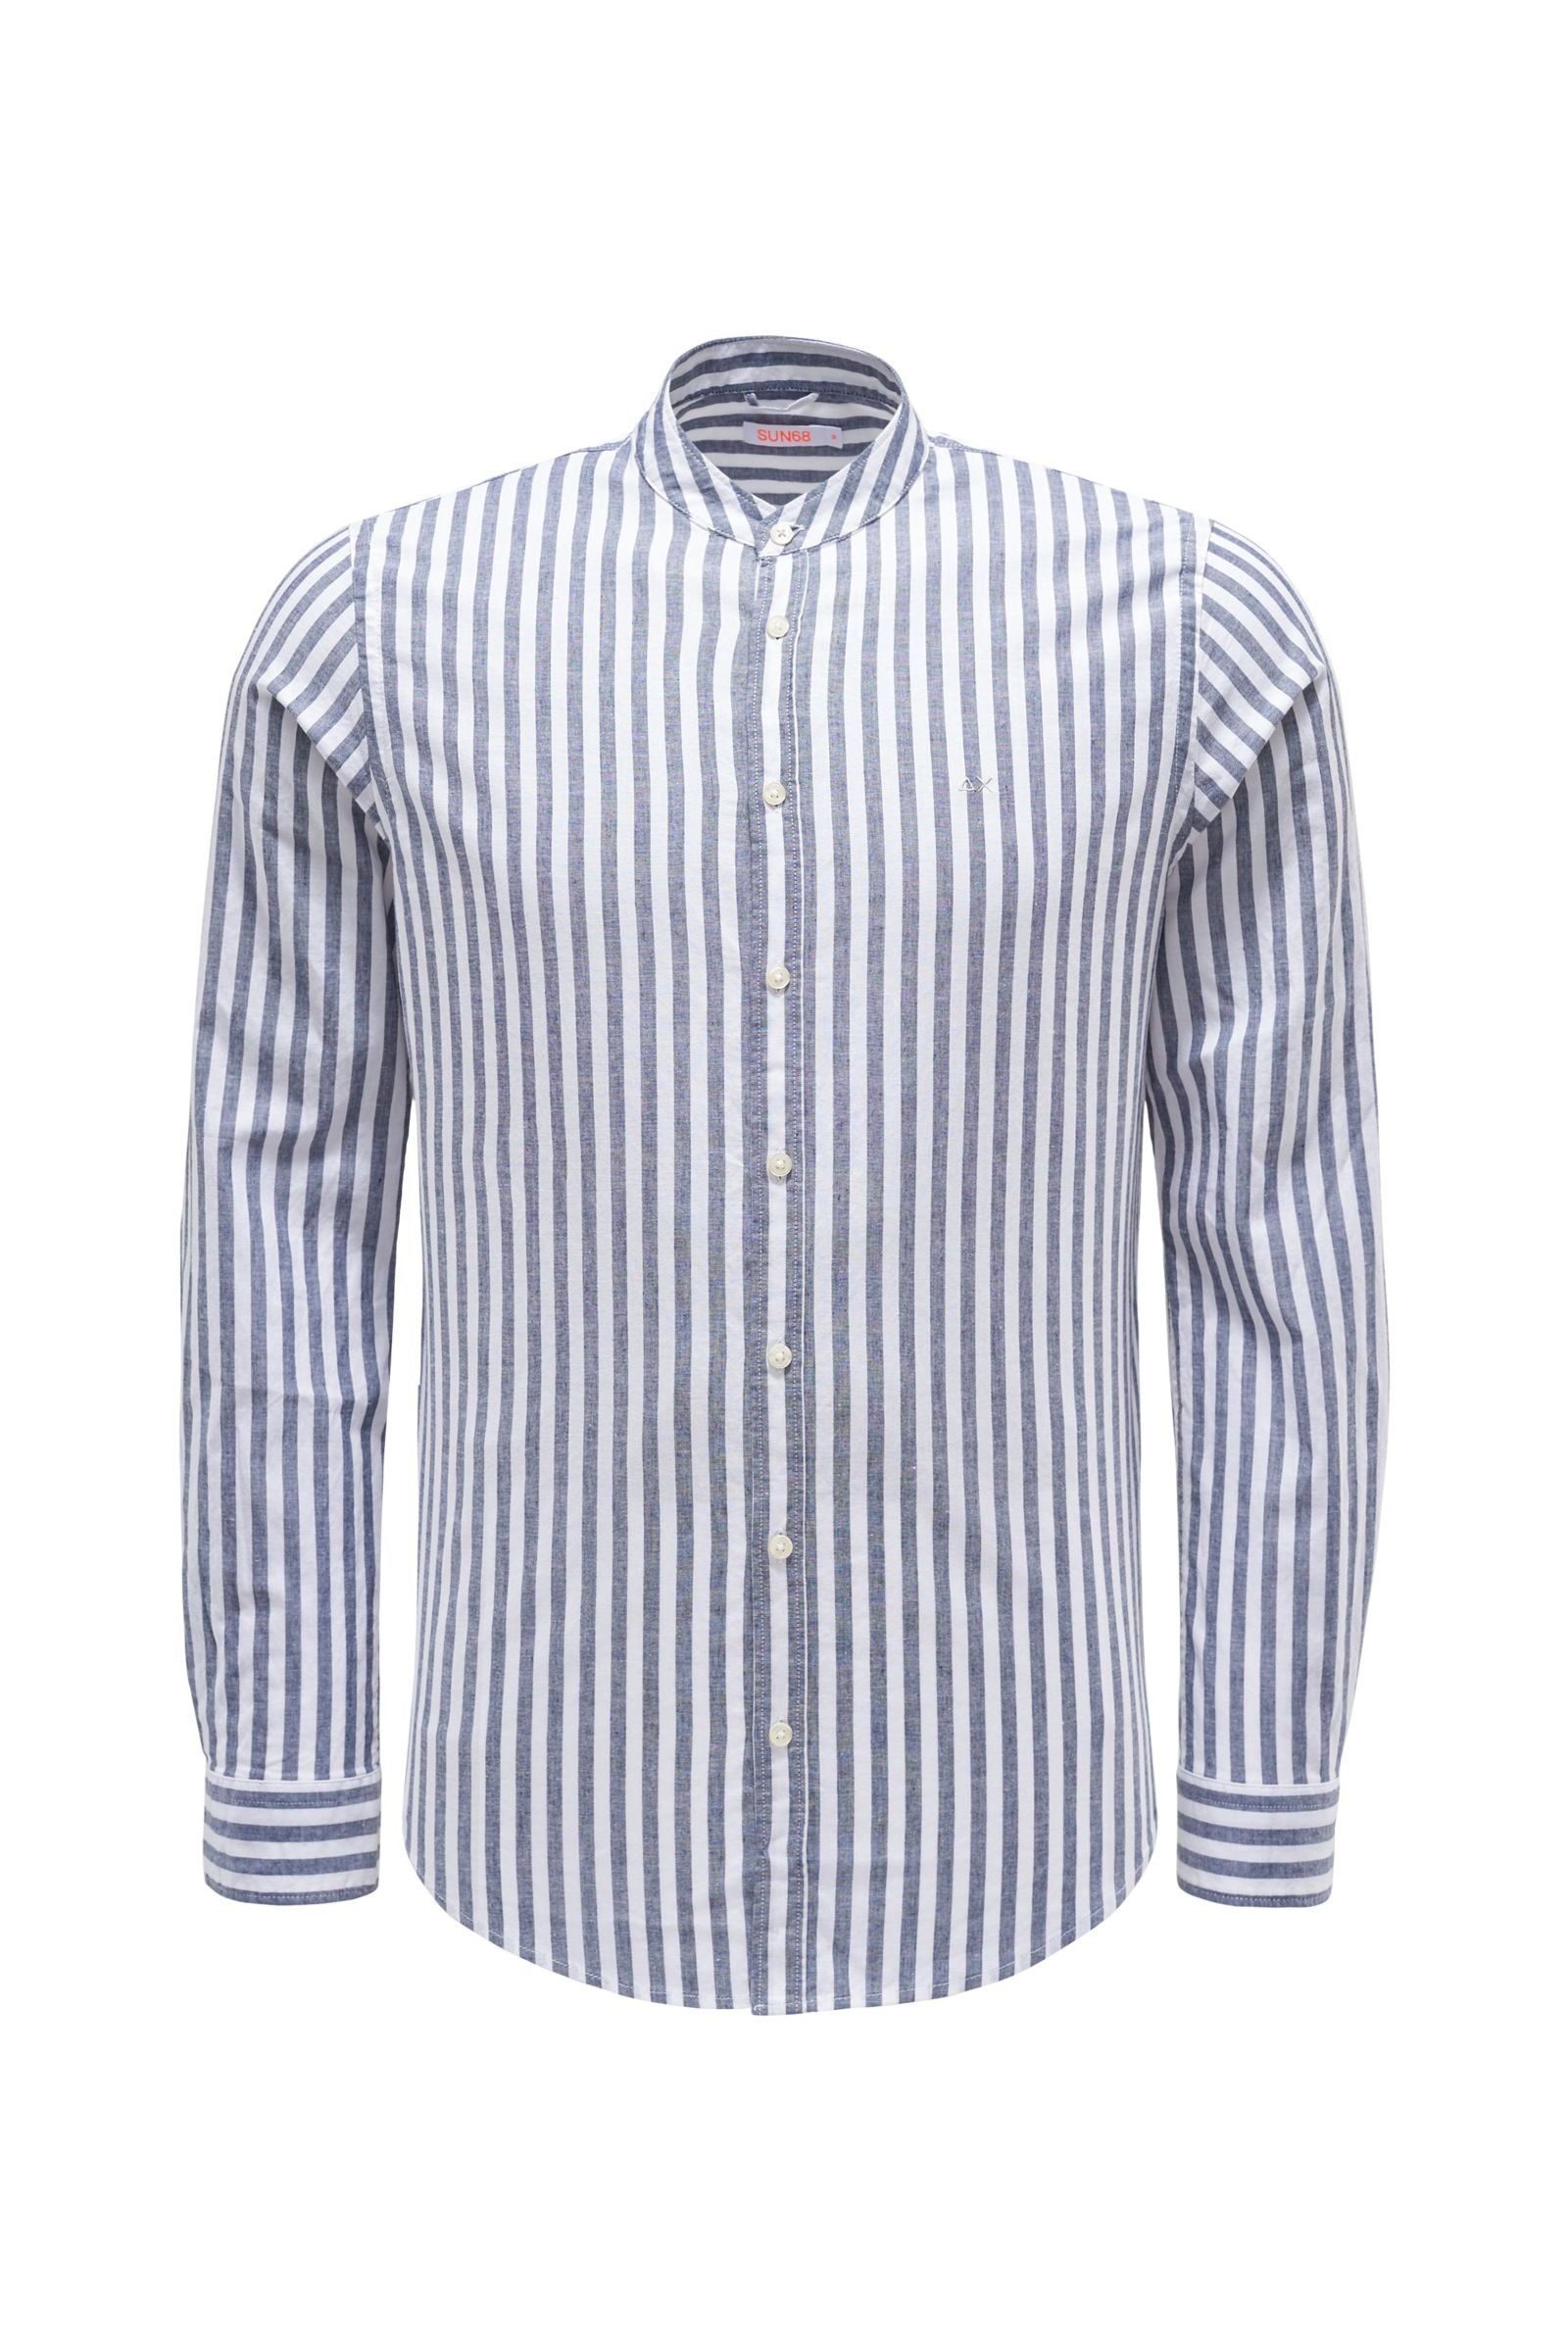 Casual shirt grandad collar grey-blue striped